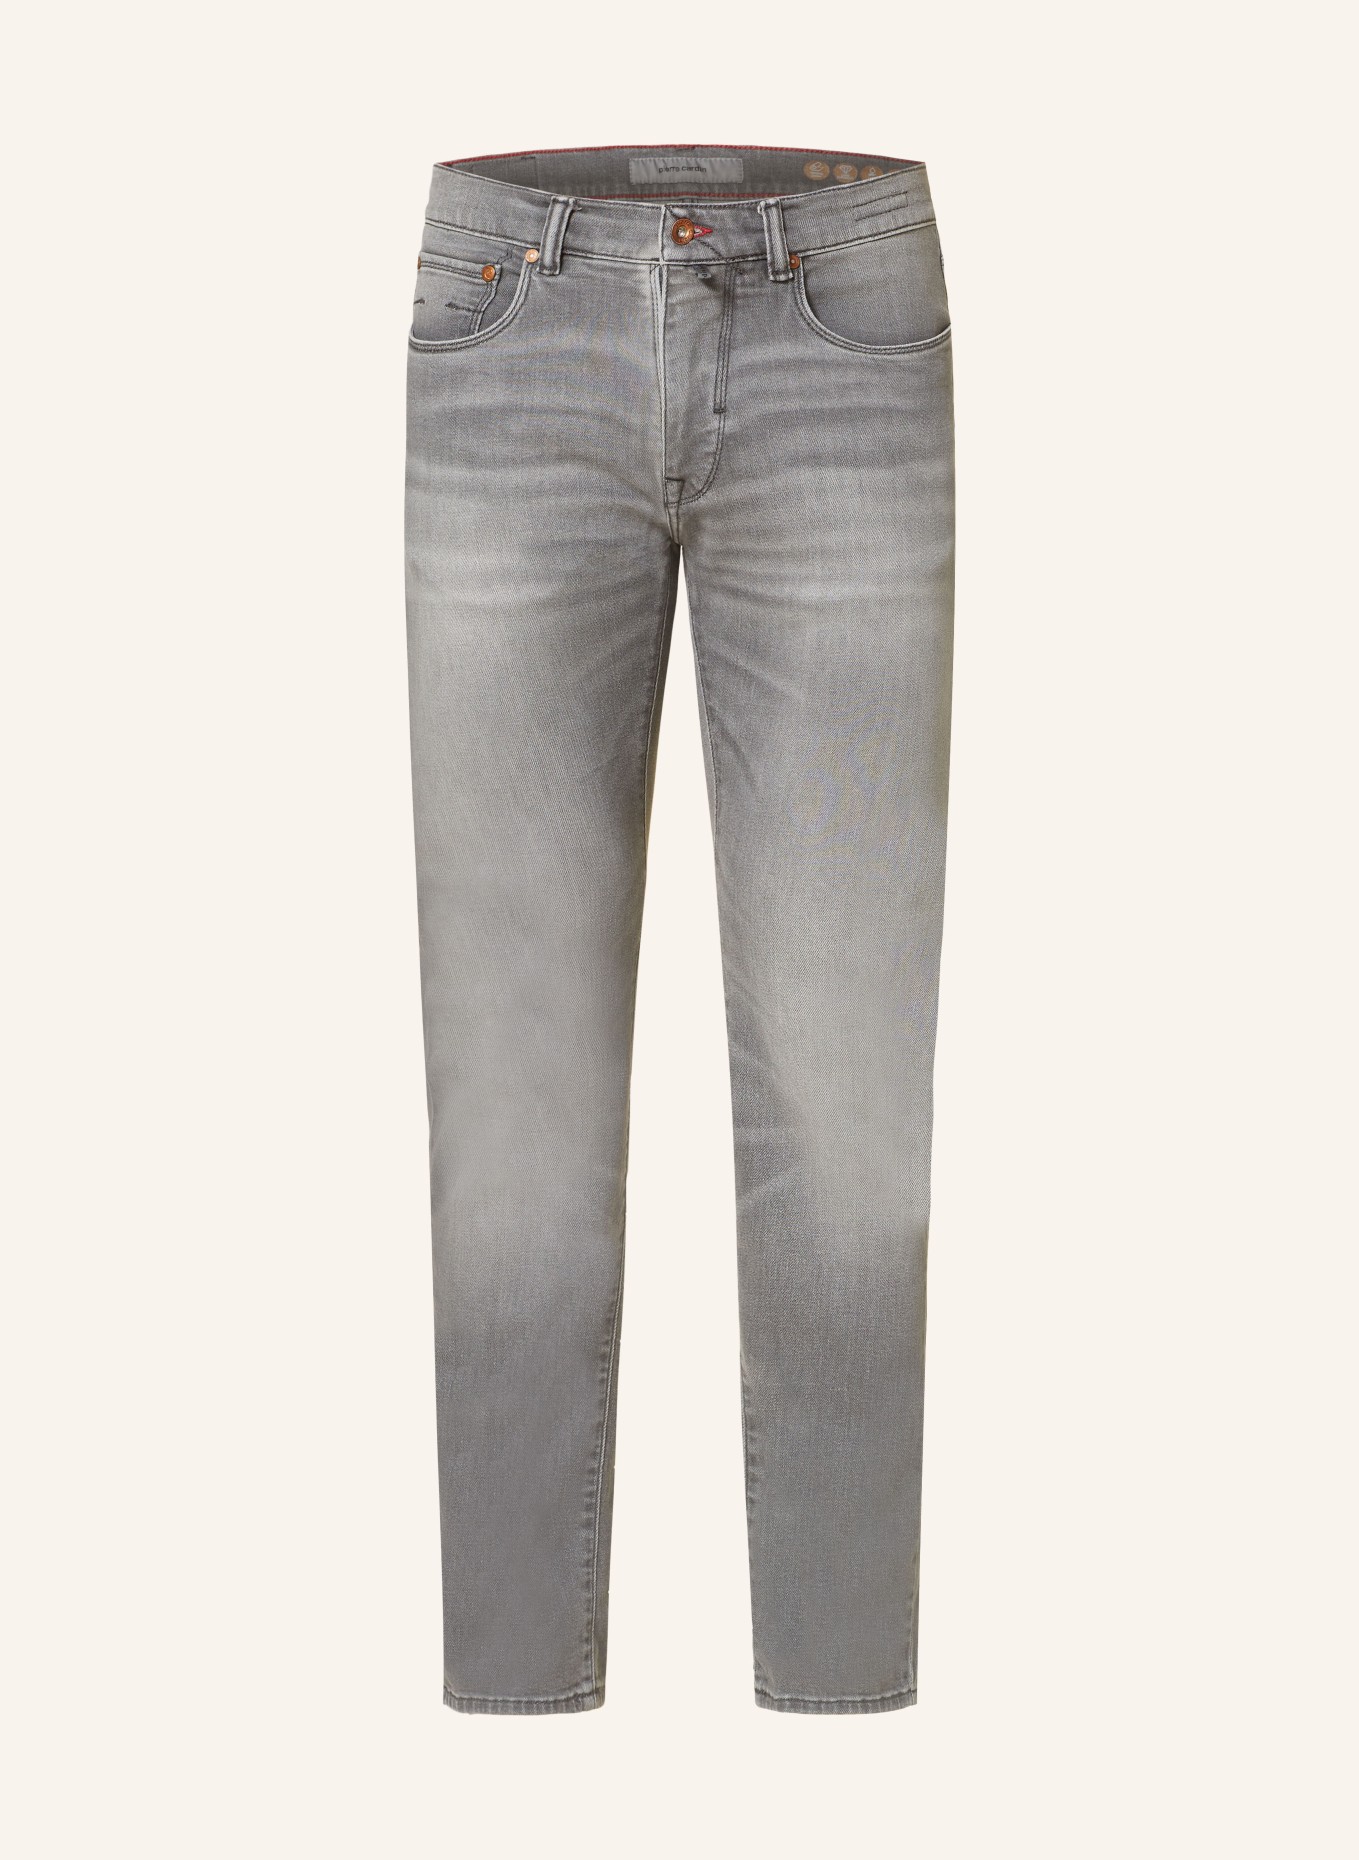 pierre cardin Jeans LYON Tapered Fit, Farbe: 9839 grey fashion fancy (Bild 1)